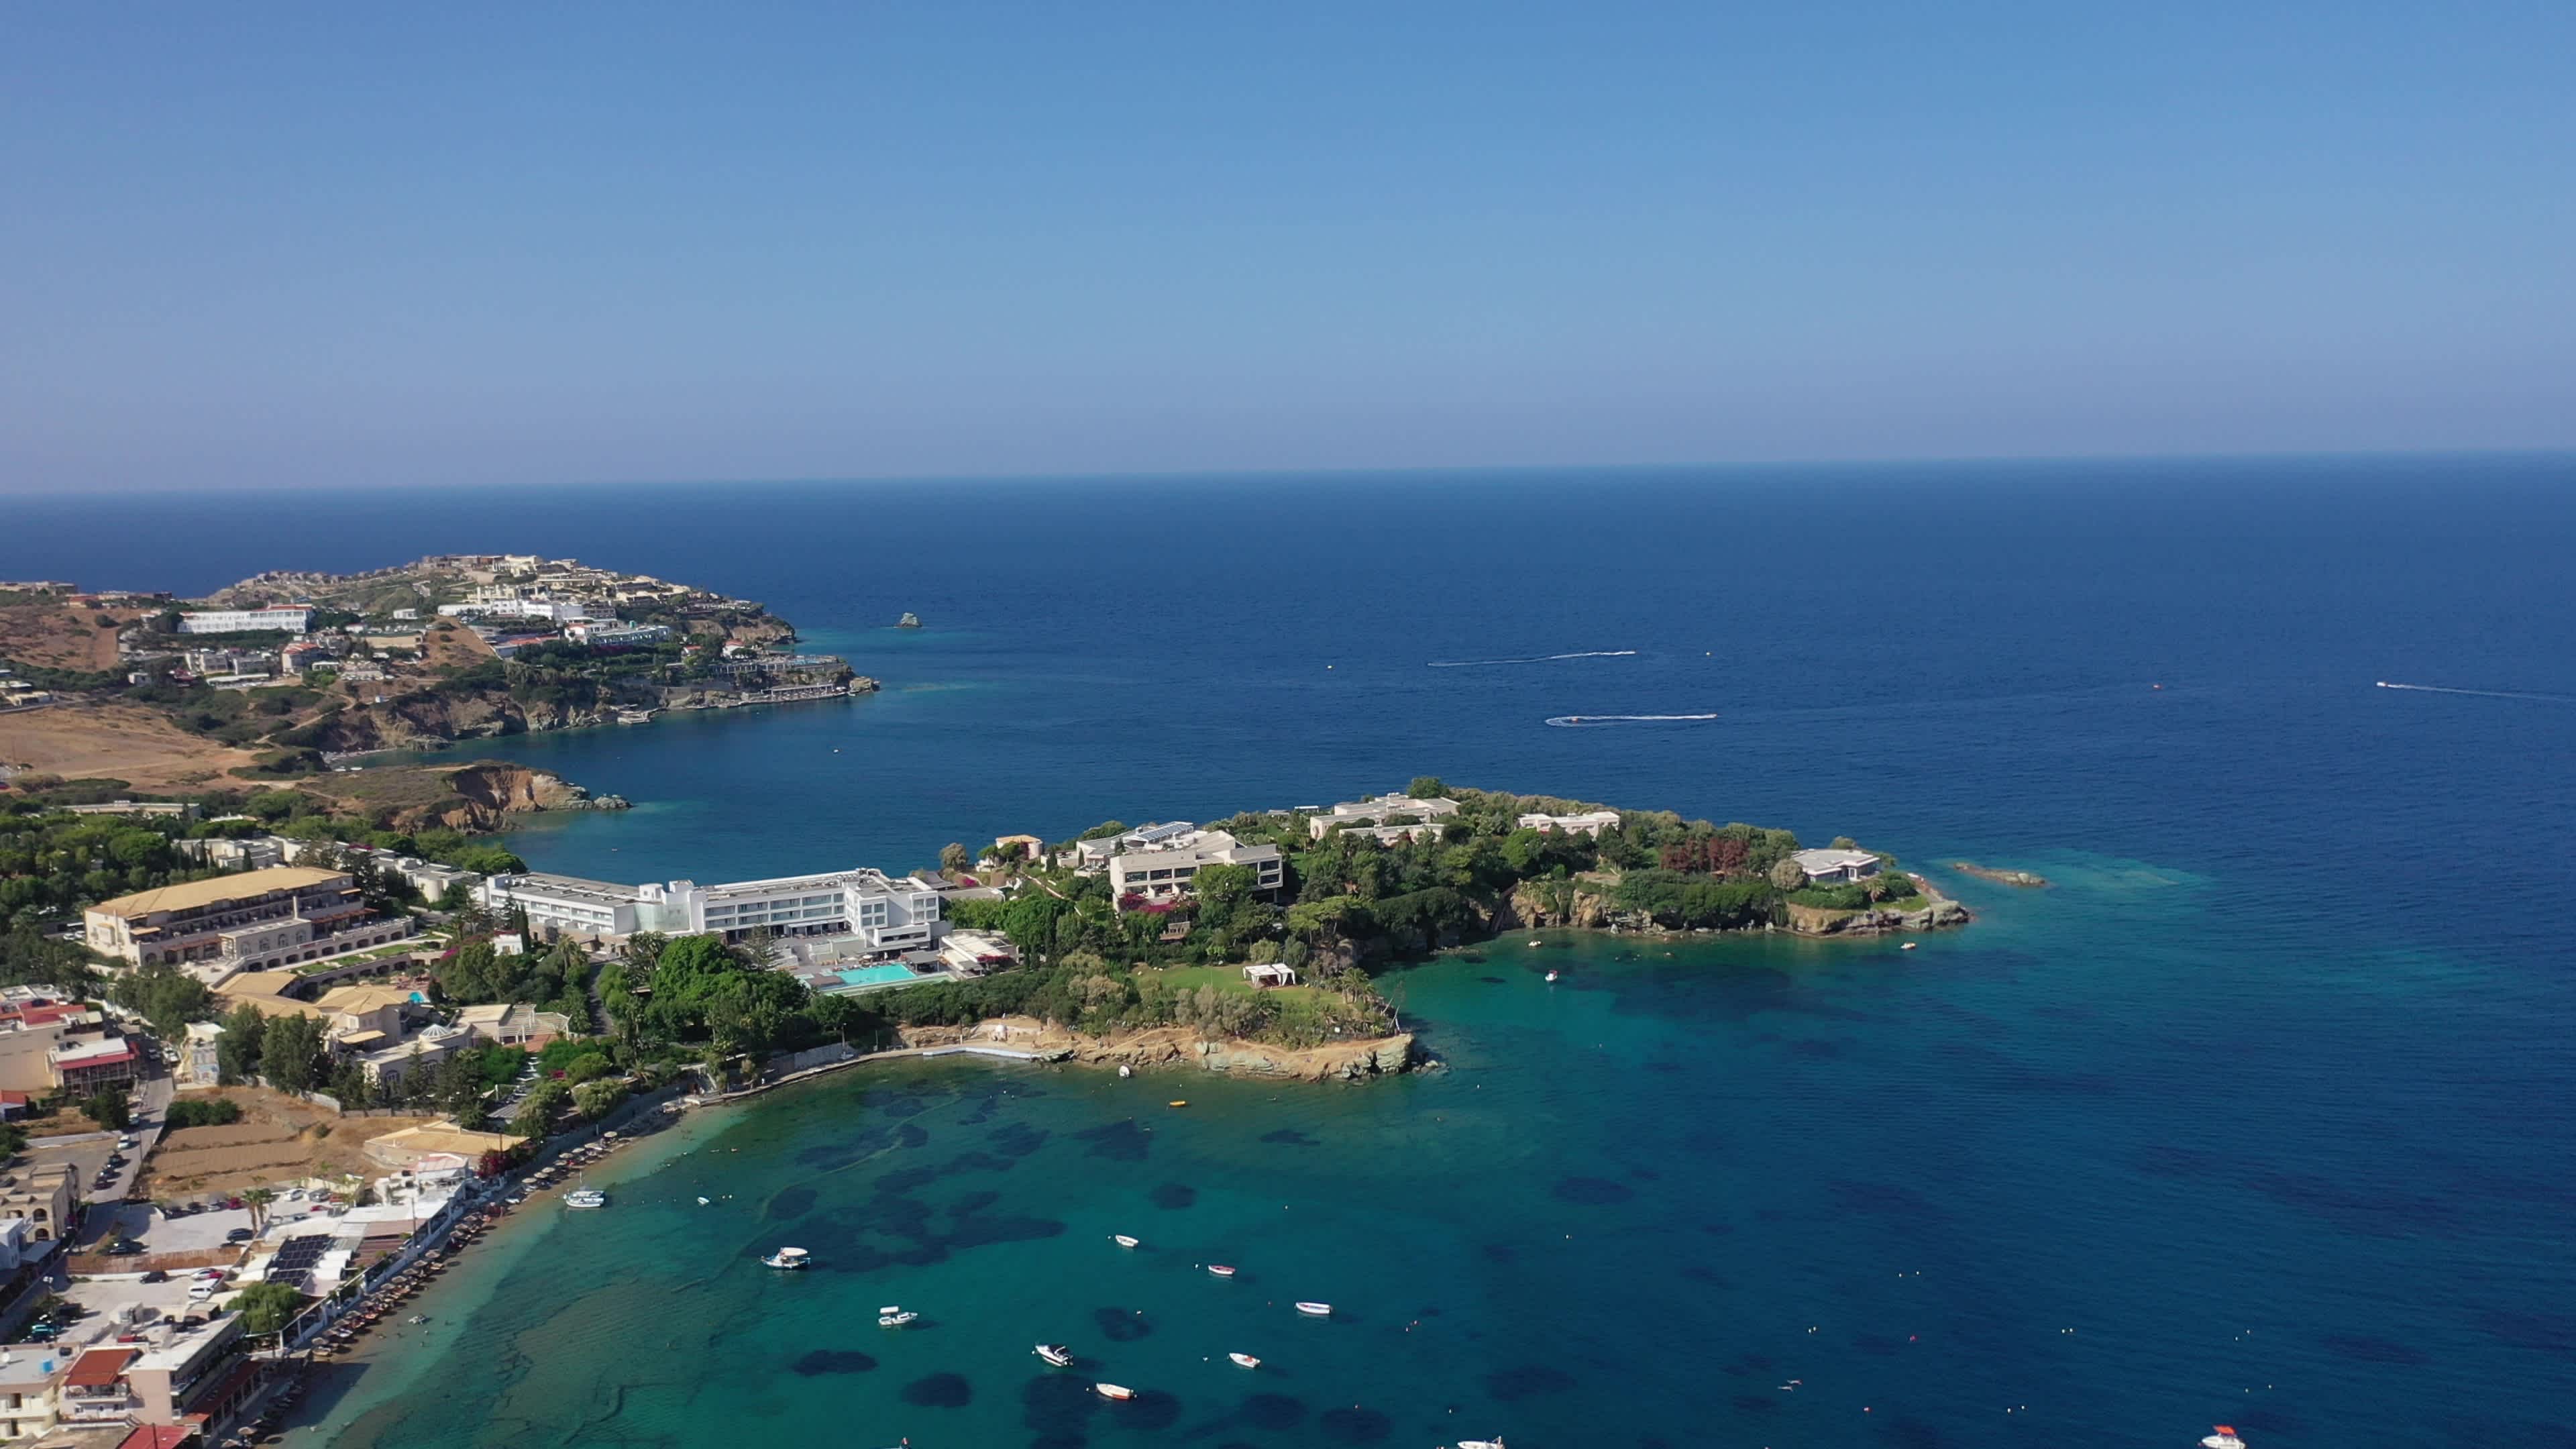 Luftaufnahme der Evita Bay auf Kreta, Griechenland bei klarem Wetter und mit Blick auf die bebaute Küste.
